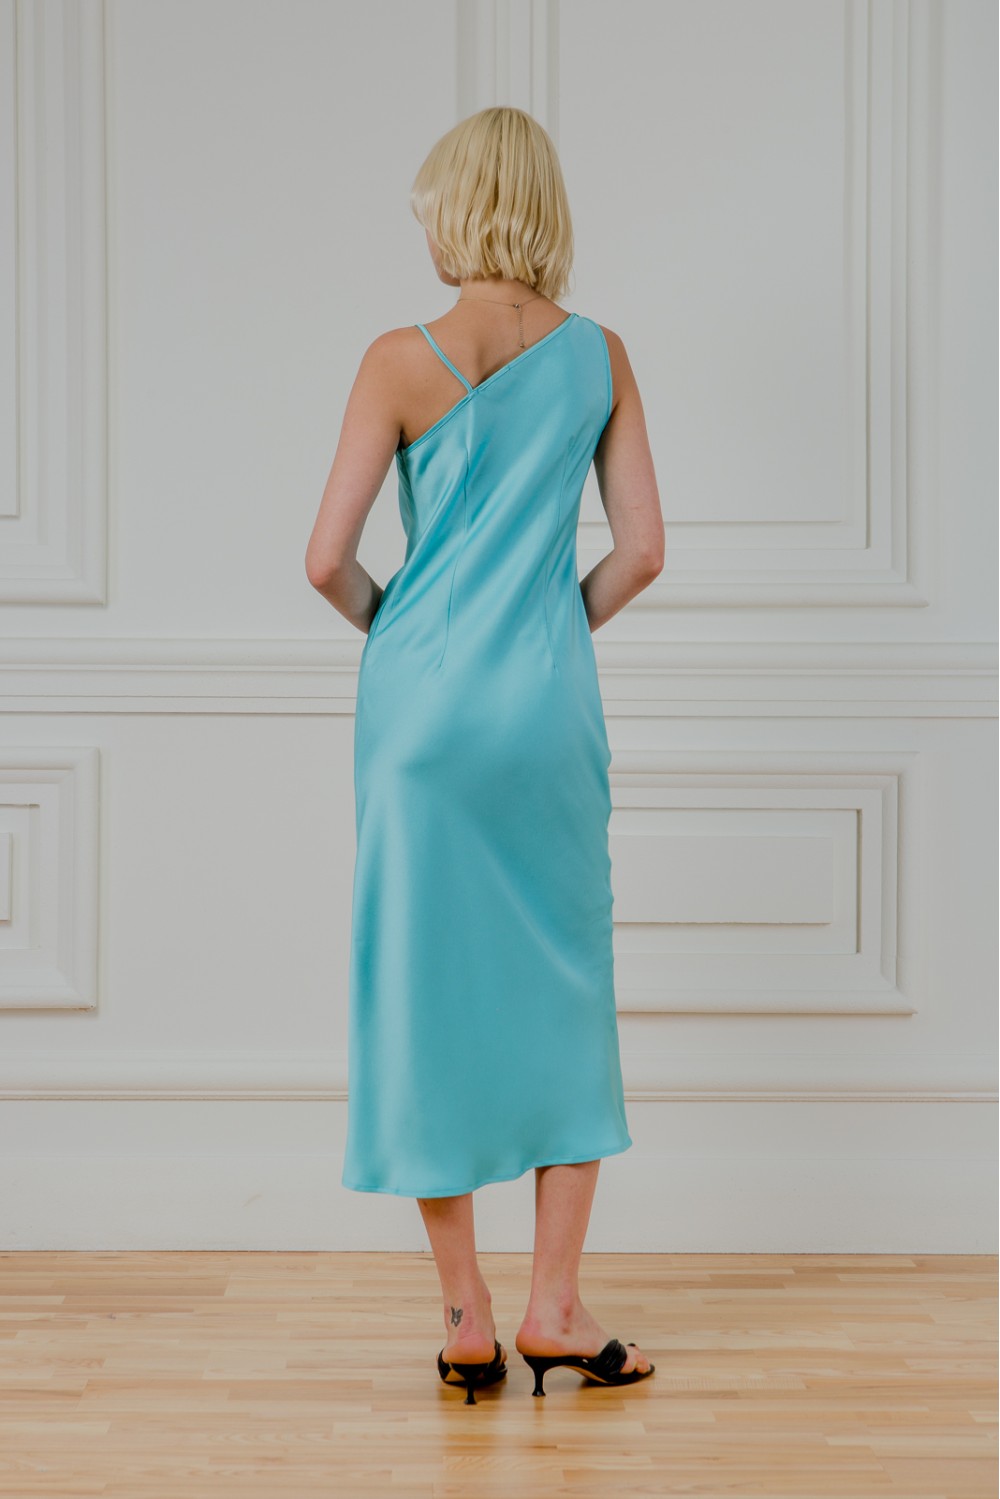 Ассиметричный атласный платье Боскония